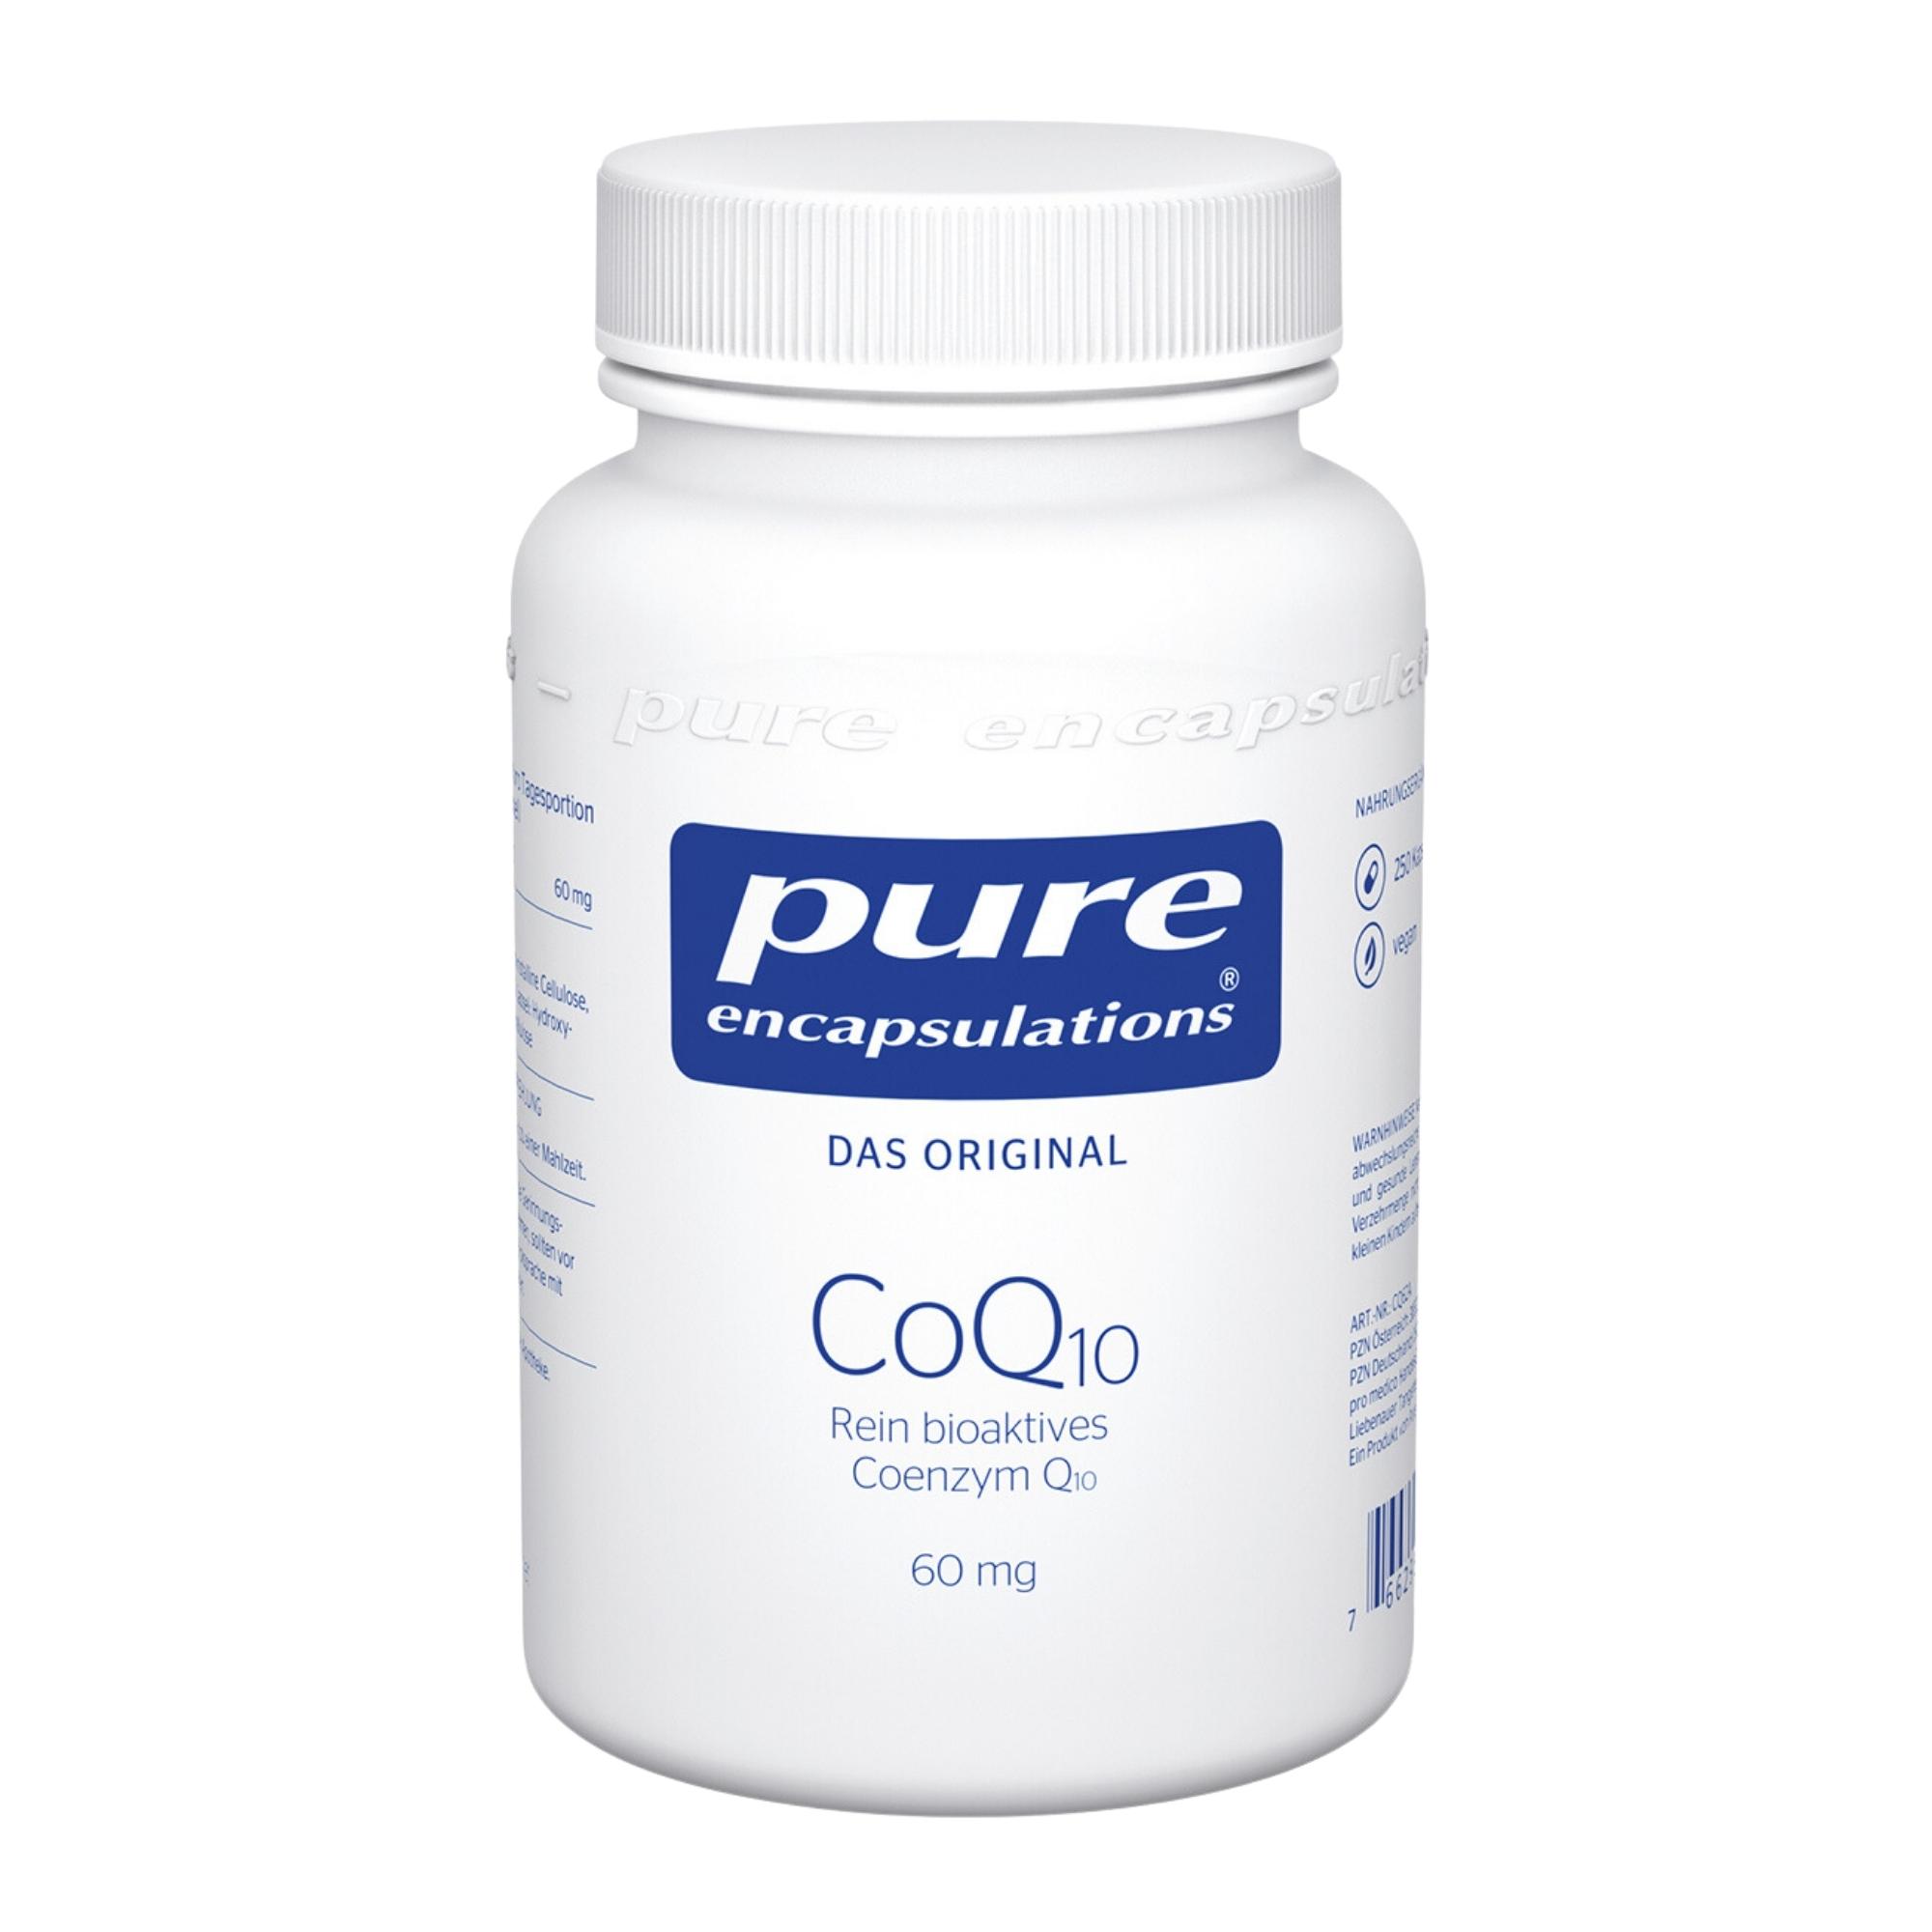 Nahrungsergänzungsmittel mit 60 mg biologisch aktivem Coenzym Q10.